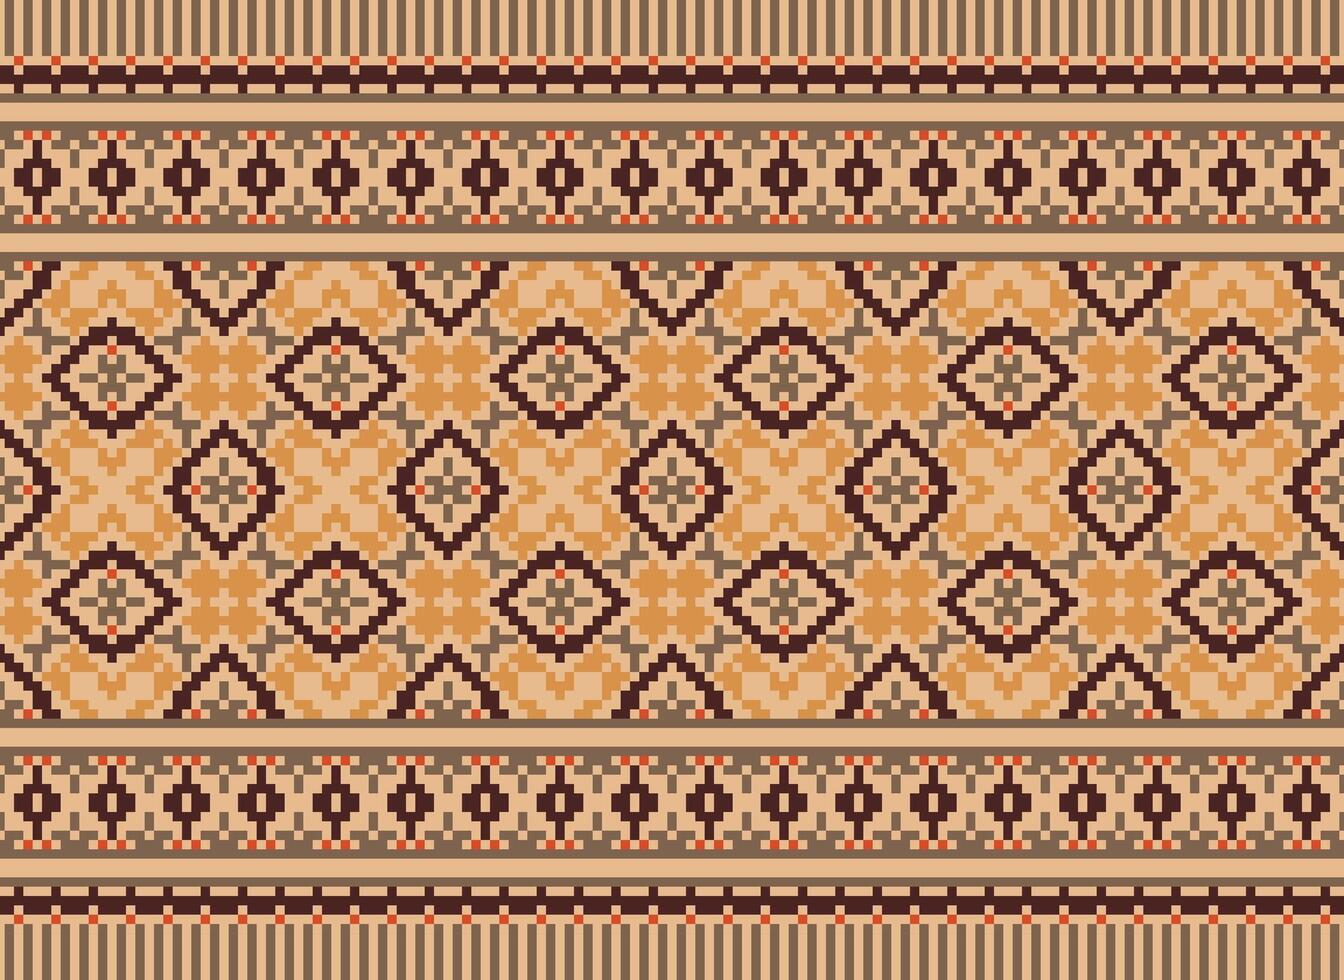 korsa sy traditionell etnisk mönster paisley blomma ikat bakgrund abstrakt aztec afrikansk indonesiska indisk sömlös mönster för tyg skriva ut trasa klänning matta gardiner och sarong vektor